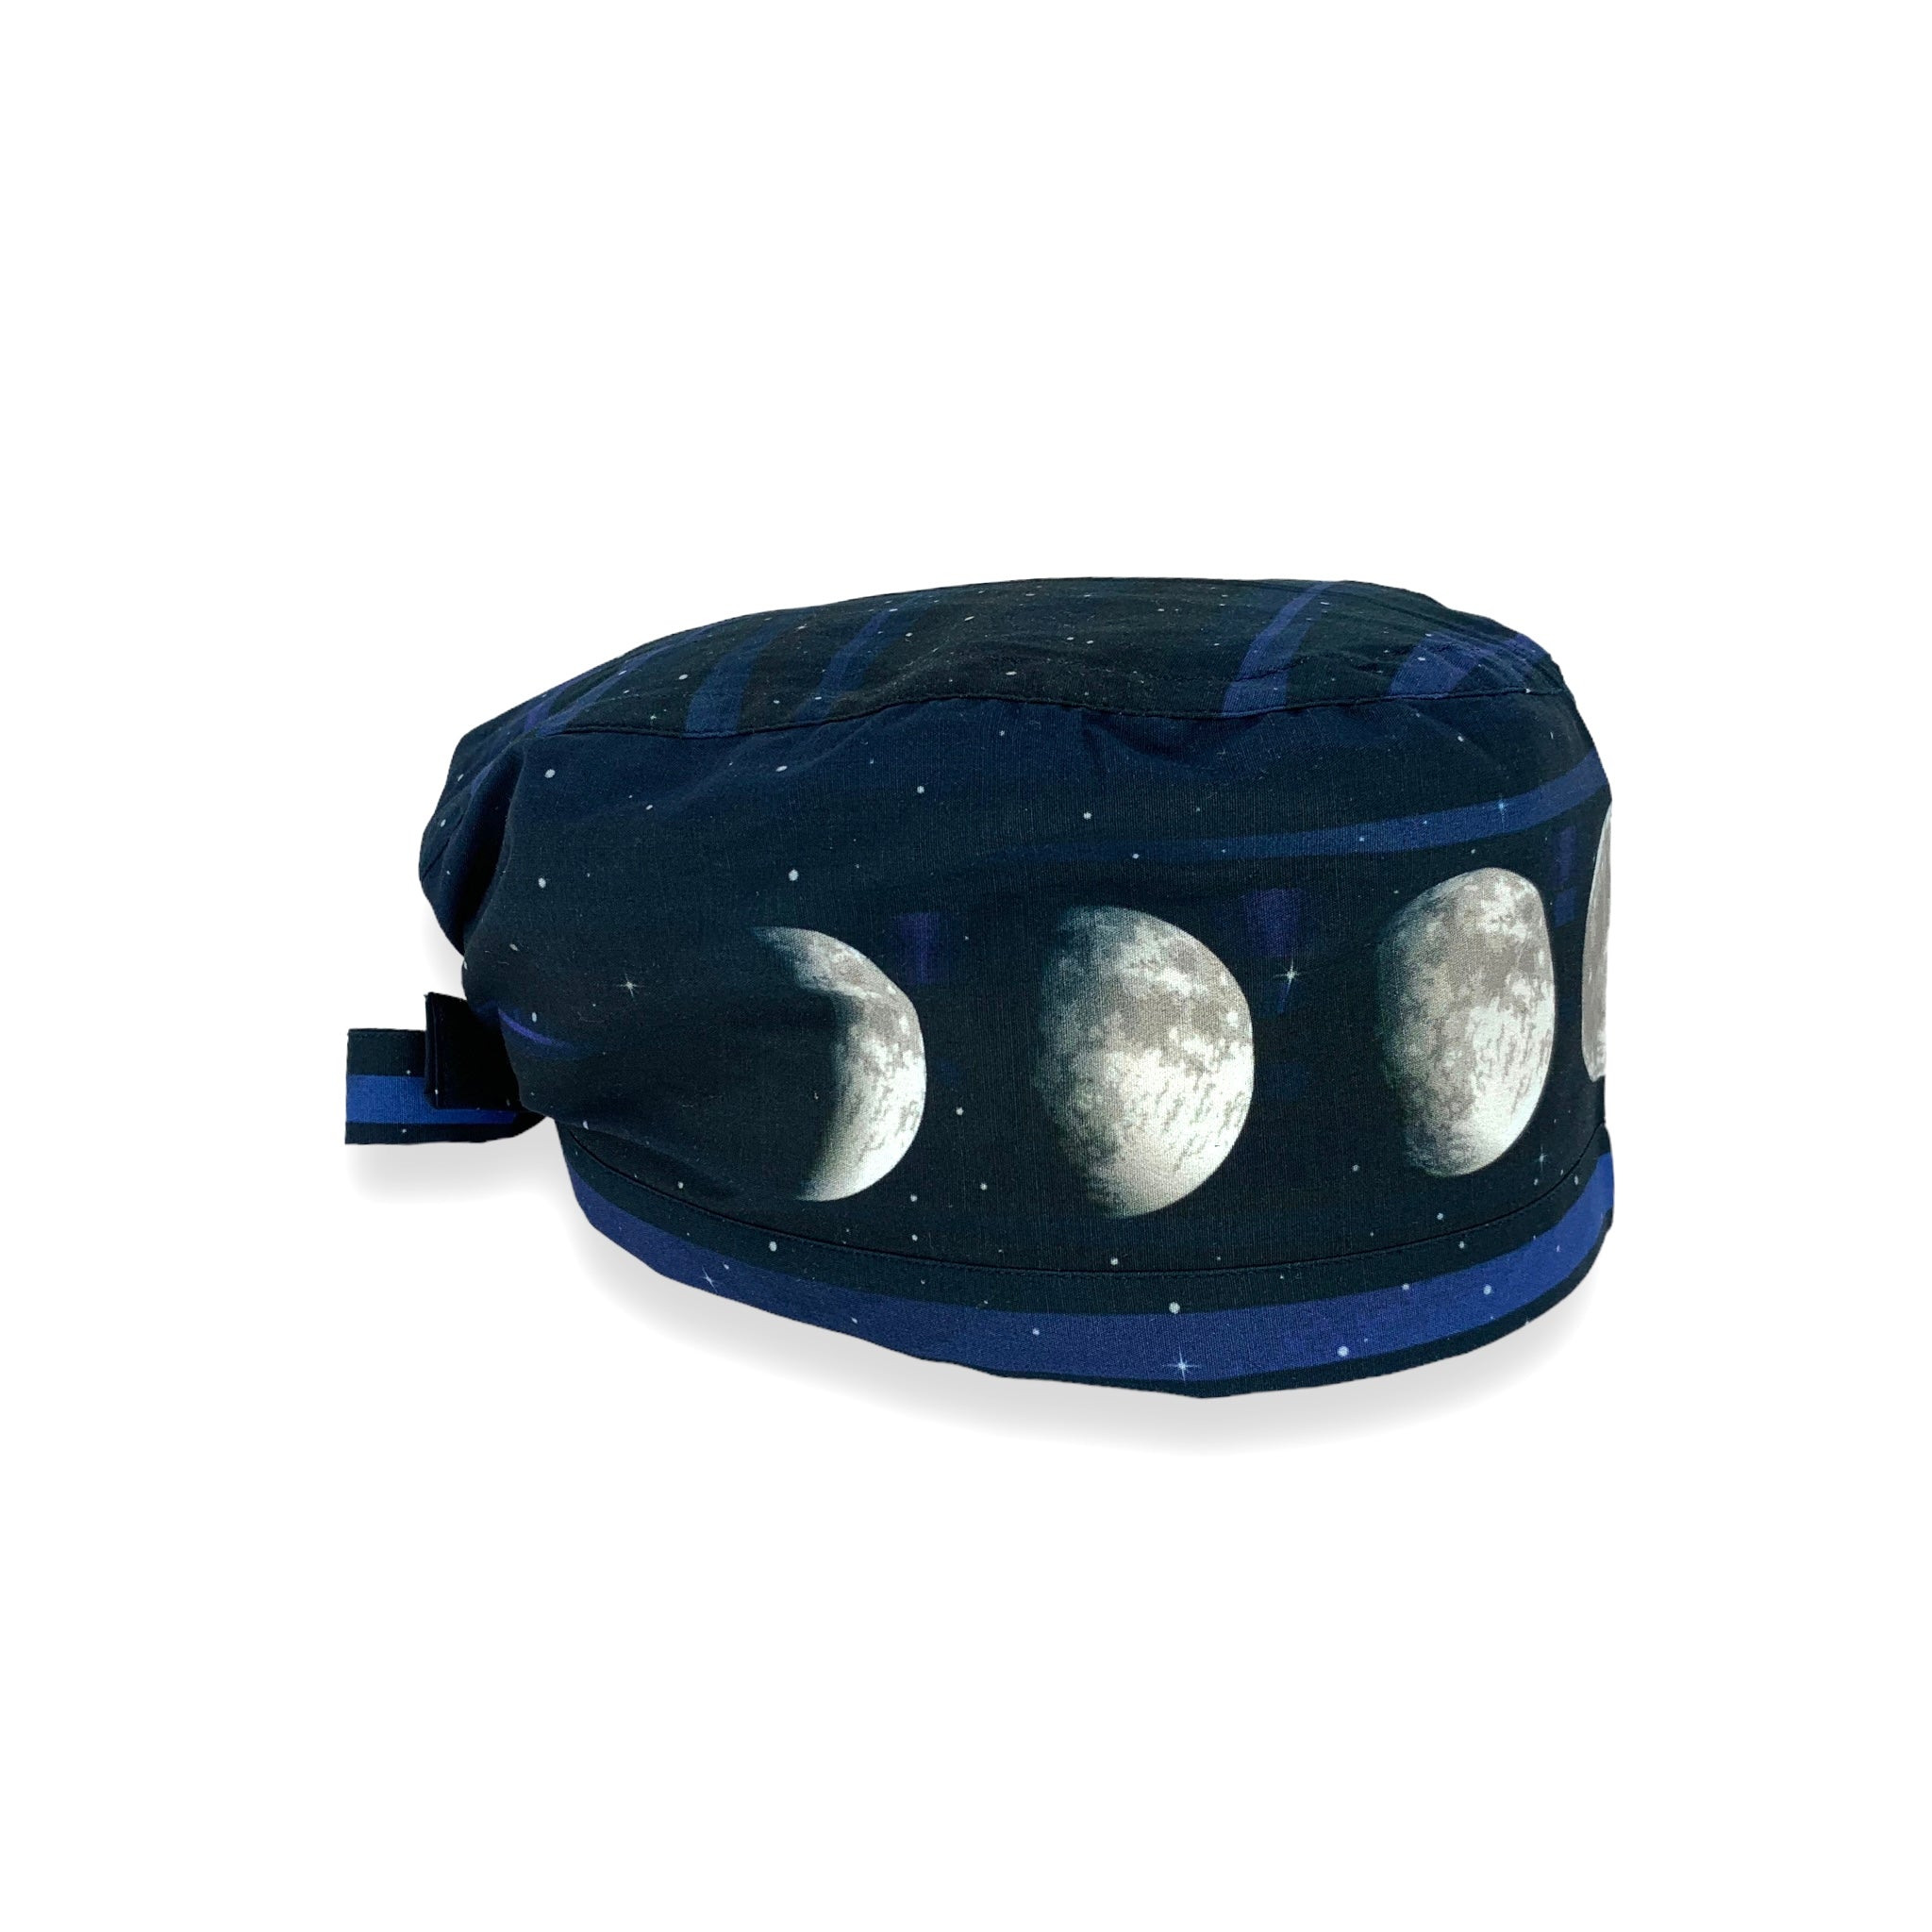 Cuffietta blu scuro con le fe fasi lunari sul cornicione della cuffietta. Una stampa incredibile che fa sembrare la luna tridimensionale. Luna argento